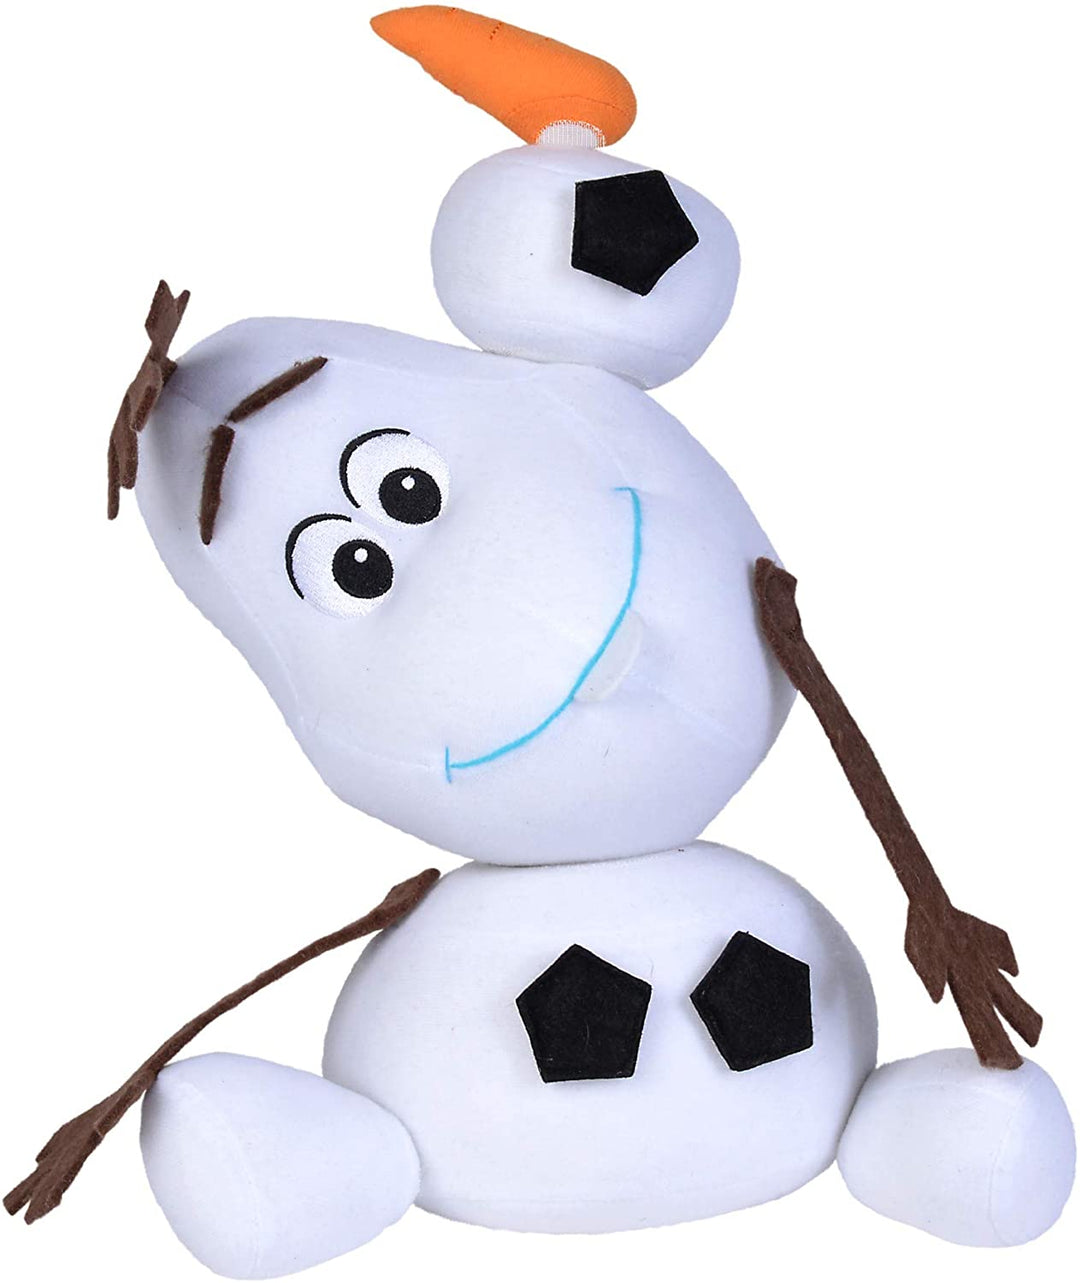 Disney 6315877559 Olaf Snowman Plush Toy-30 cm, Multicoloured